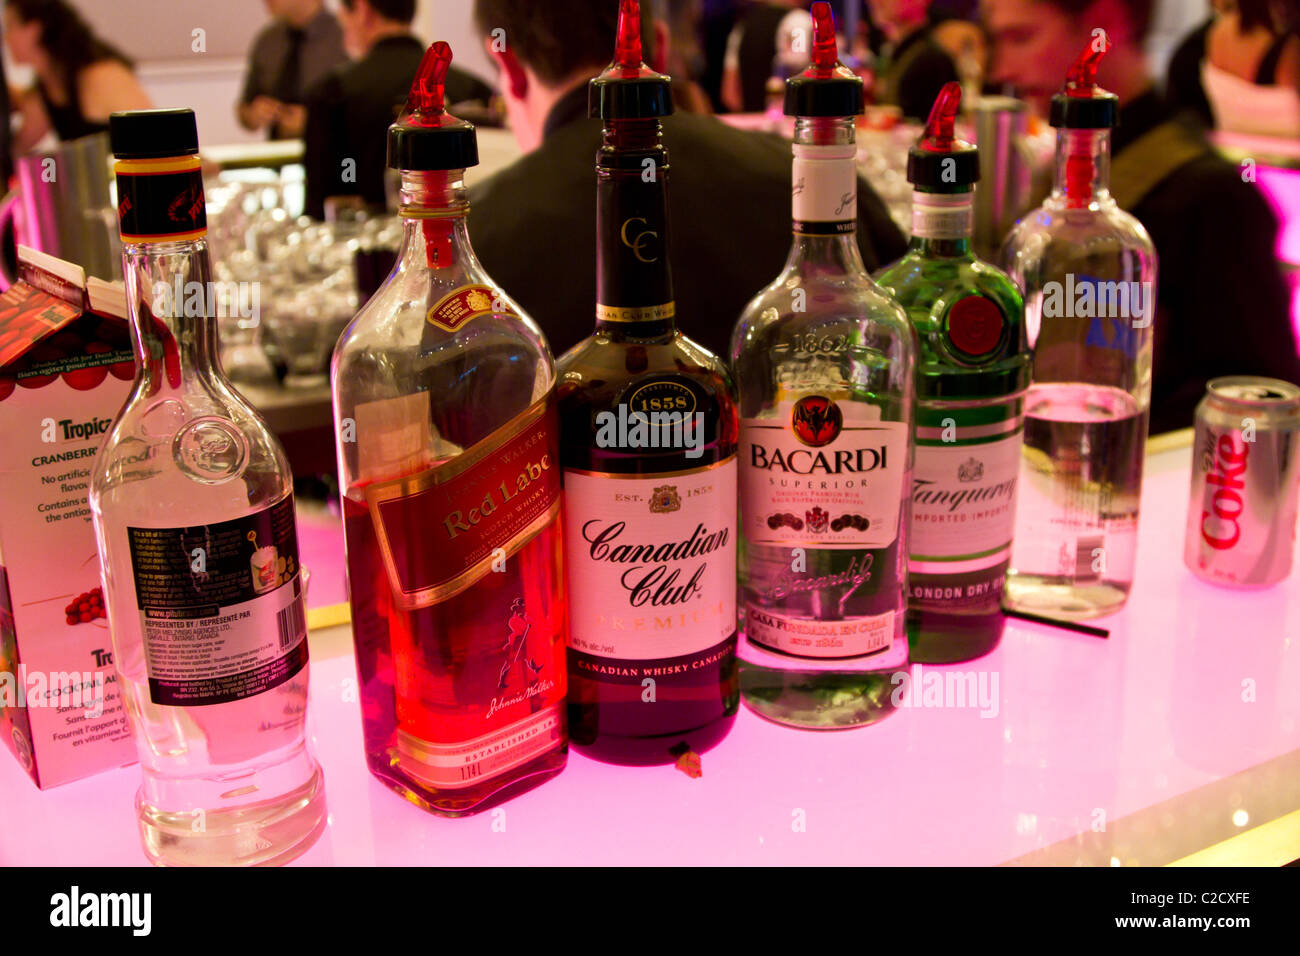 Alkohol, alkoholische bar Getränke Schnaps Flasche brandy Club cocktail Glas Likör Schnaps viele Nacht-Club-Party rum Geist Wodka whi Stockfoto